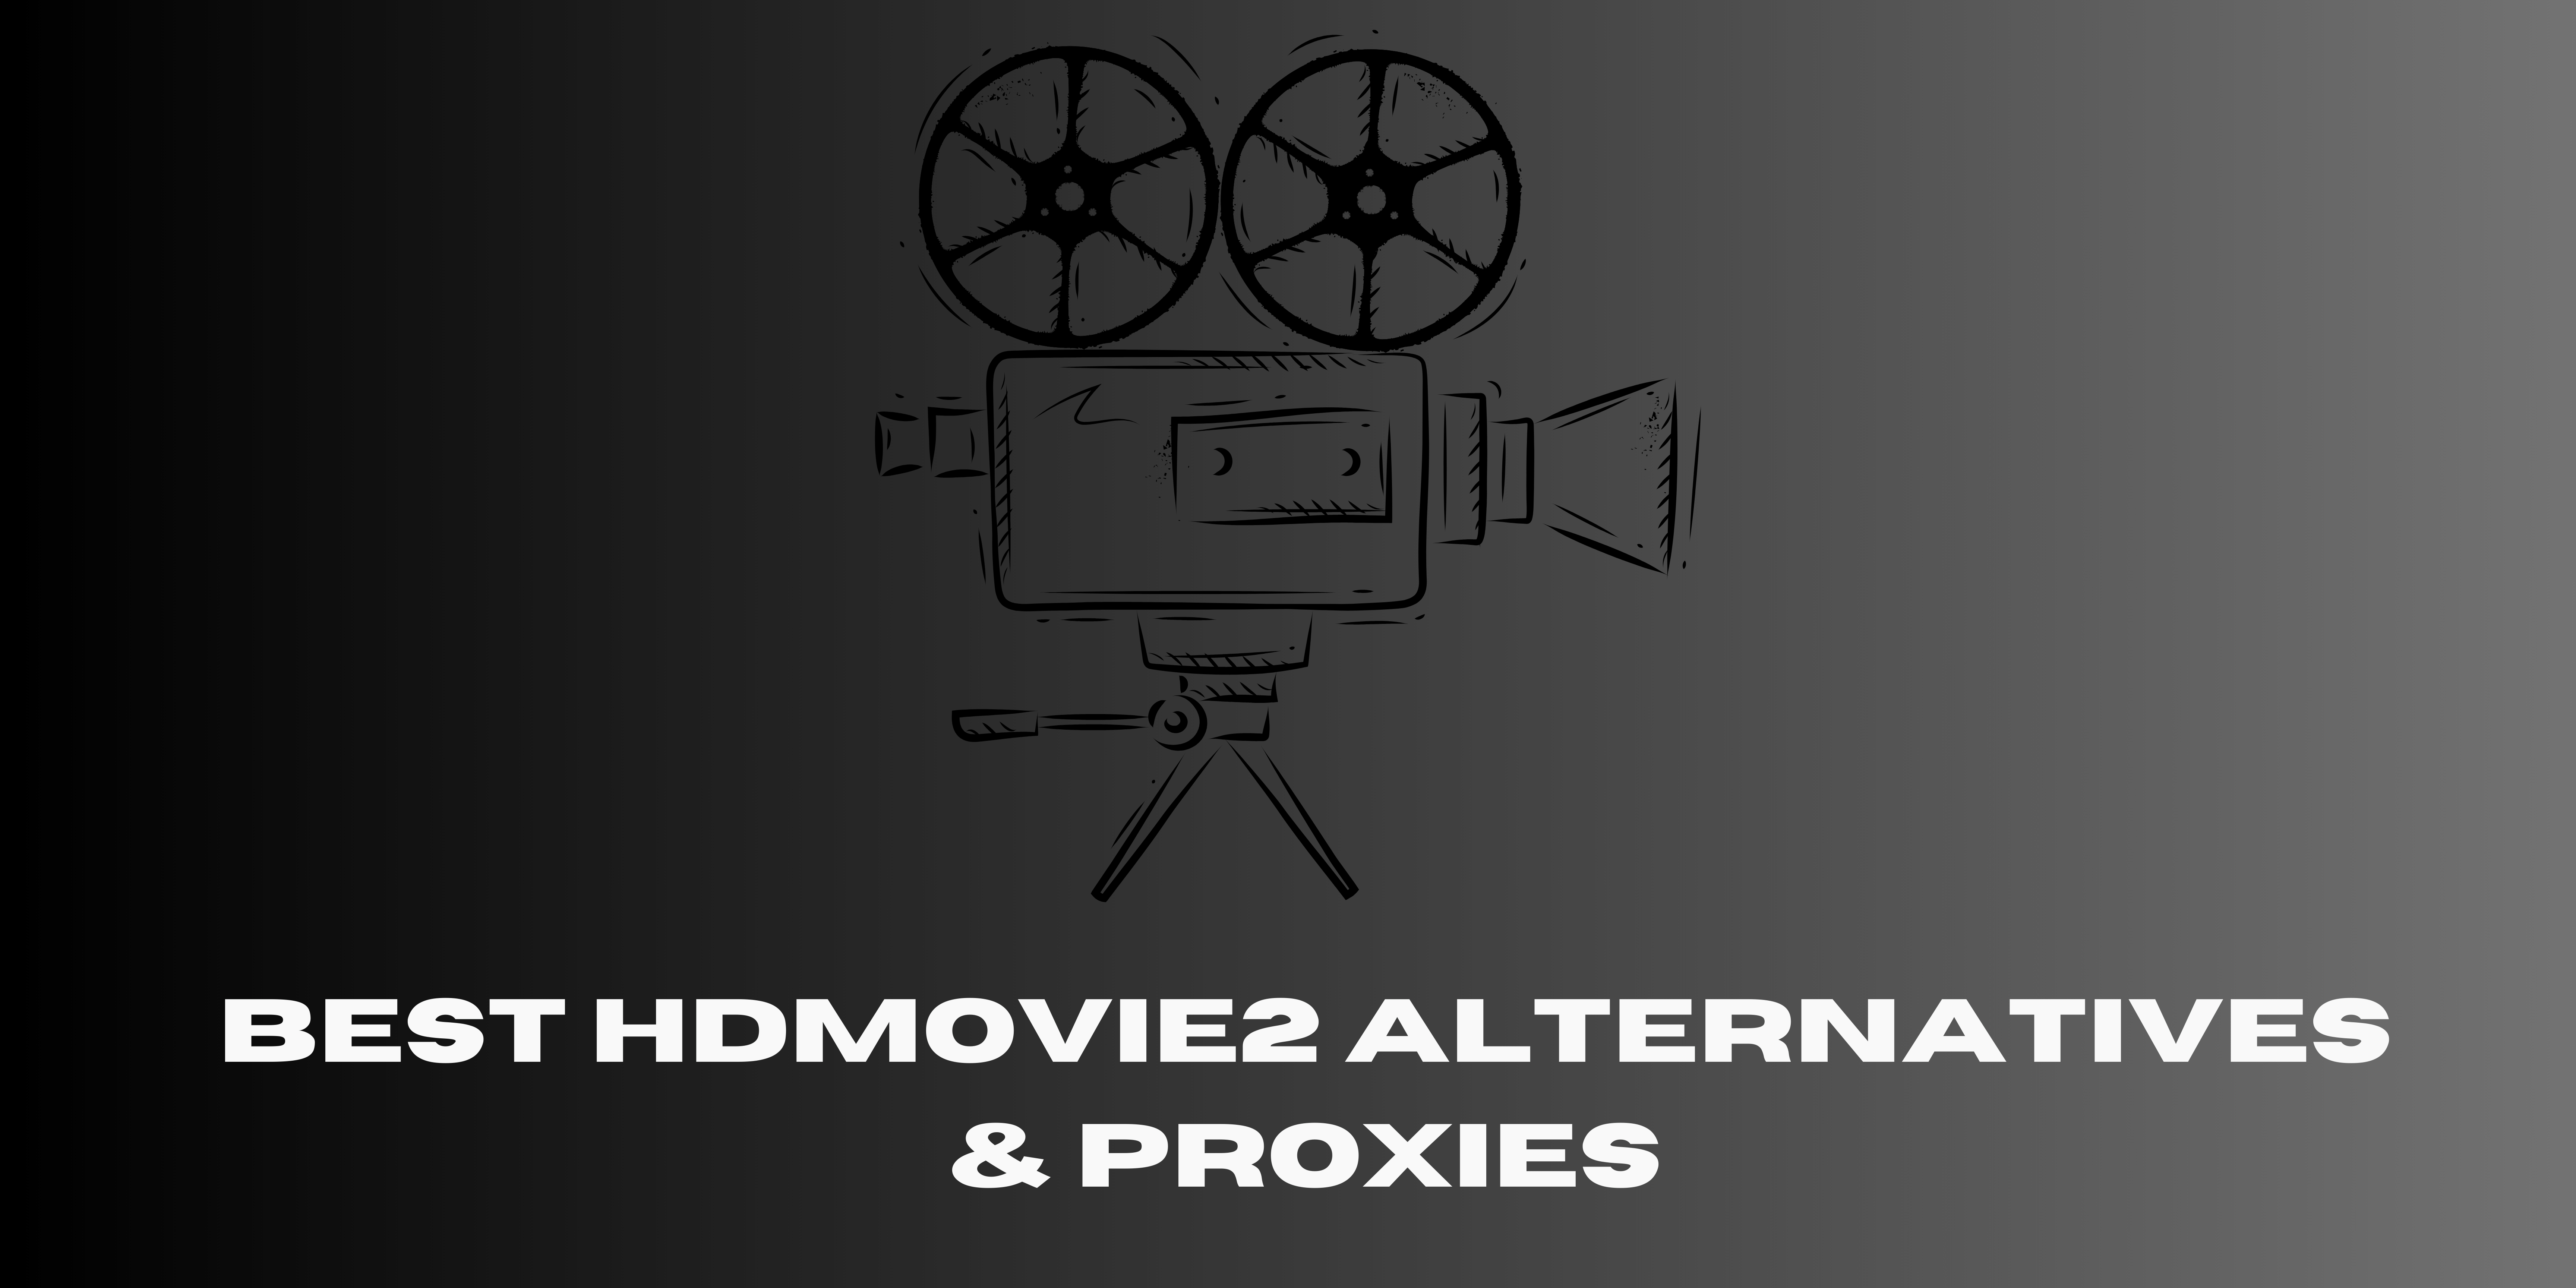 HDMovie2 alternatives and proxies